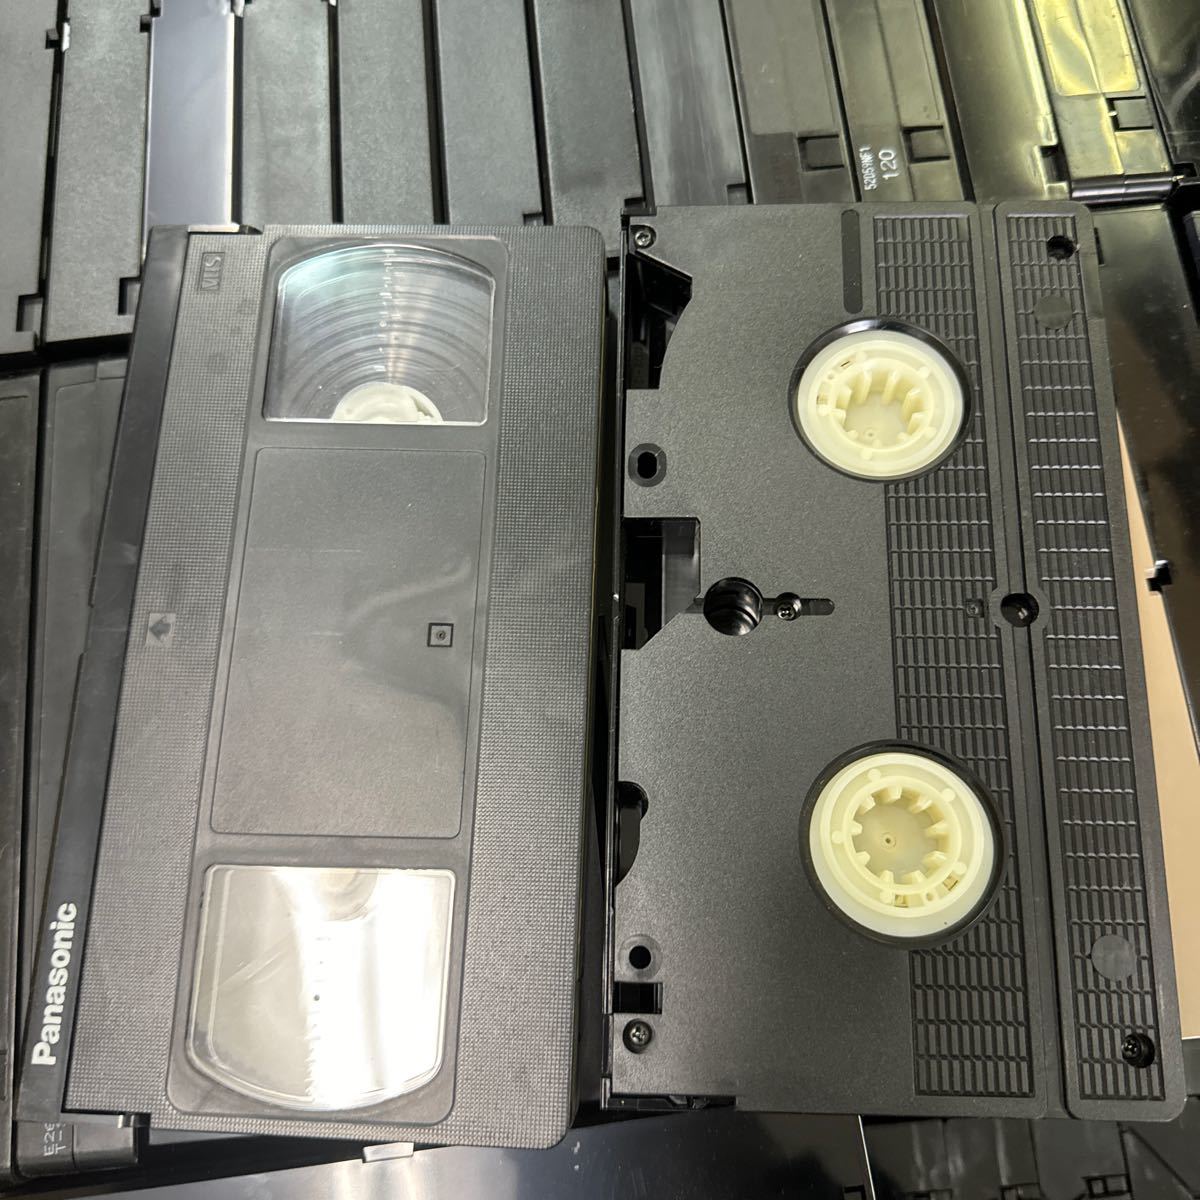 ◆⑧使用済み VHS ビデオテープ 大量まとめ売り 約100本以上 中古 録画済み ケースなし 本体のみ ダビング 上書き 再生未確認 142-4の画像4